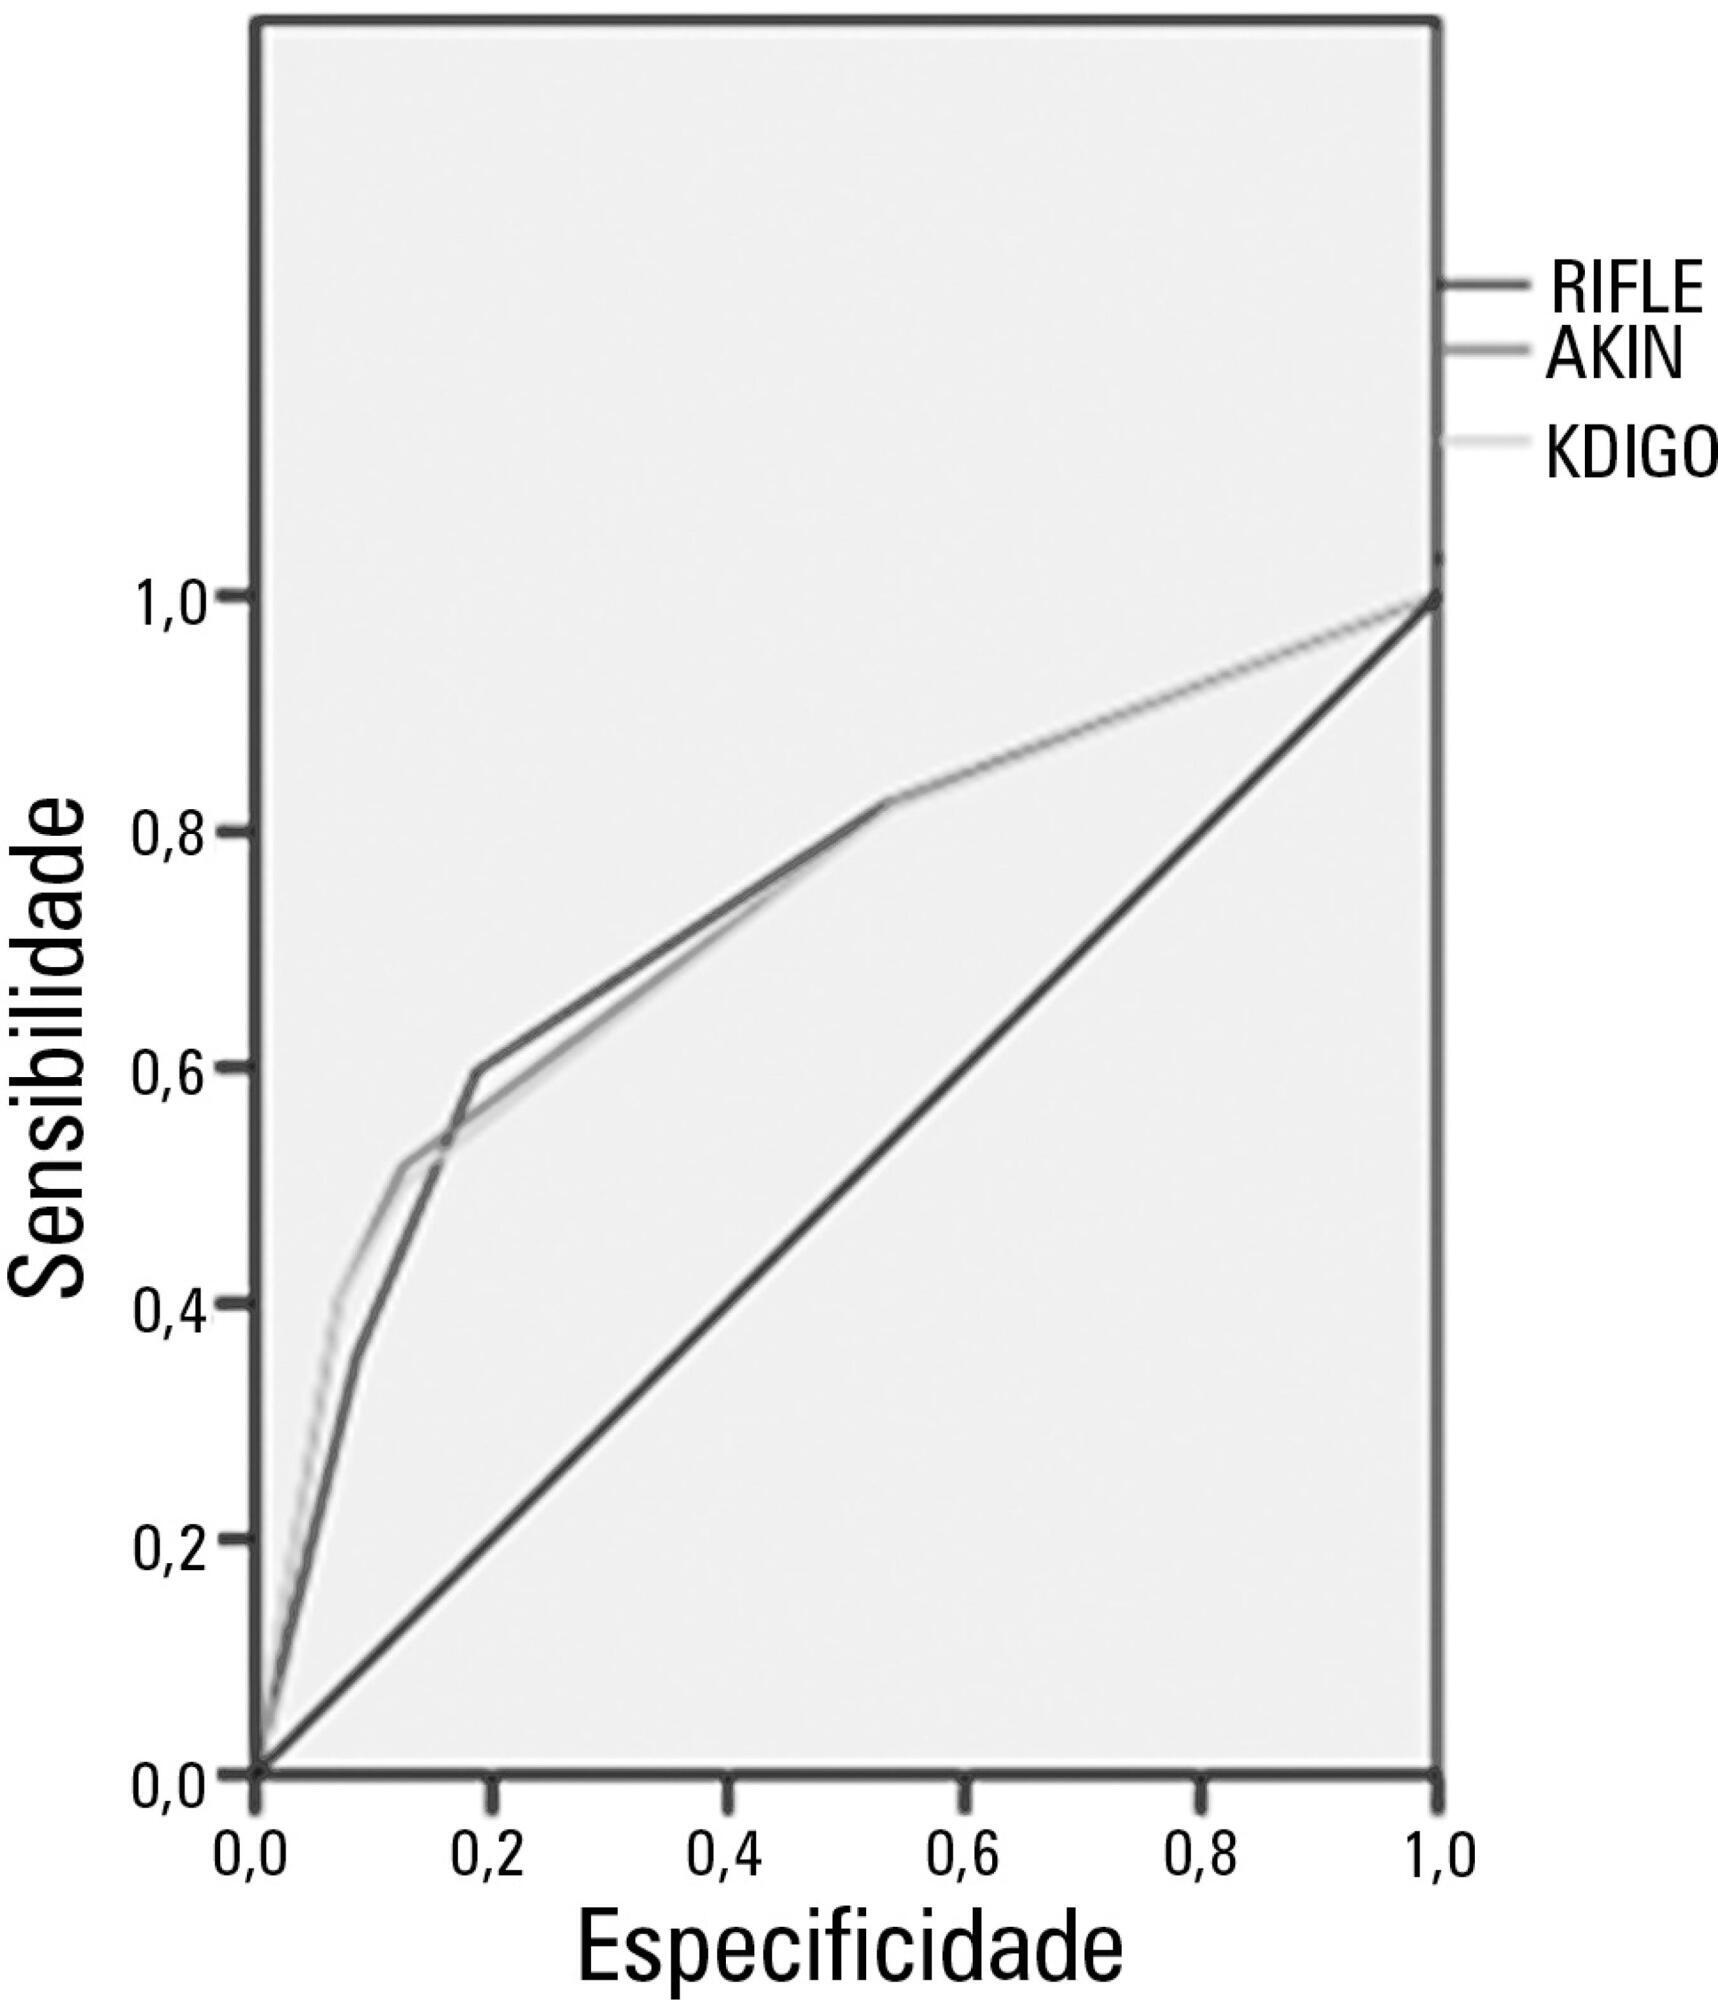 Comparação dos critérios RIFLE, AKIN e KDIGO quanto à
               capacidade de predição de mortalidade em pacientes graves